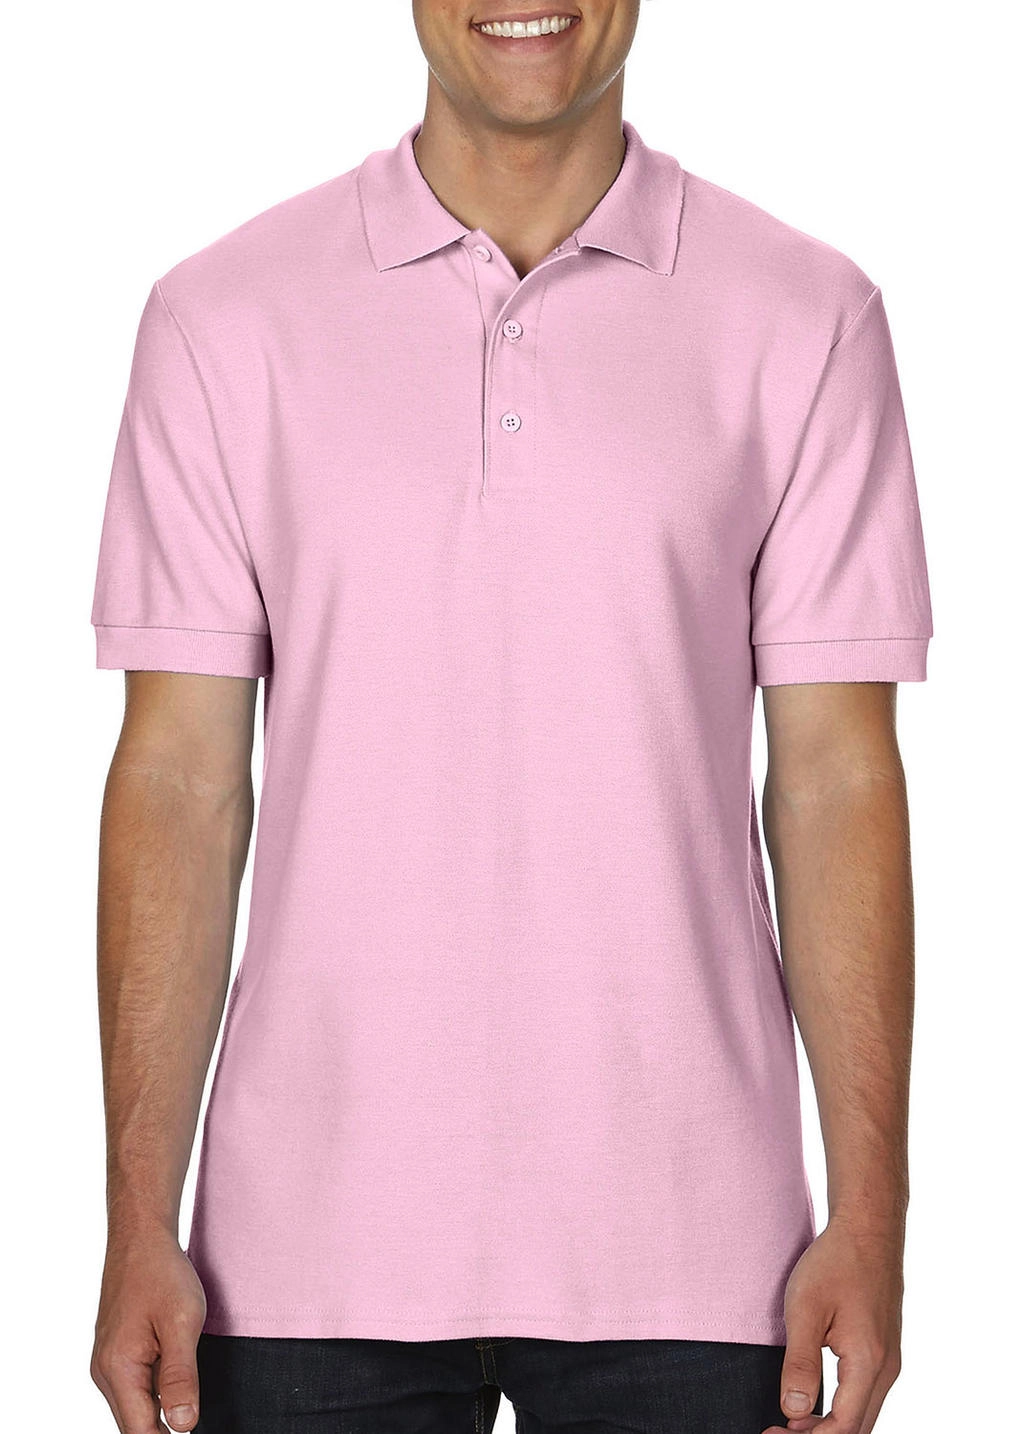 Premium Cotton Double Piqué Polo zum Besticken und Bedrucken in der Farbe Light Pink mit Ihren Logo, Schriftzug oder Motiv.